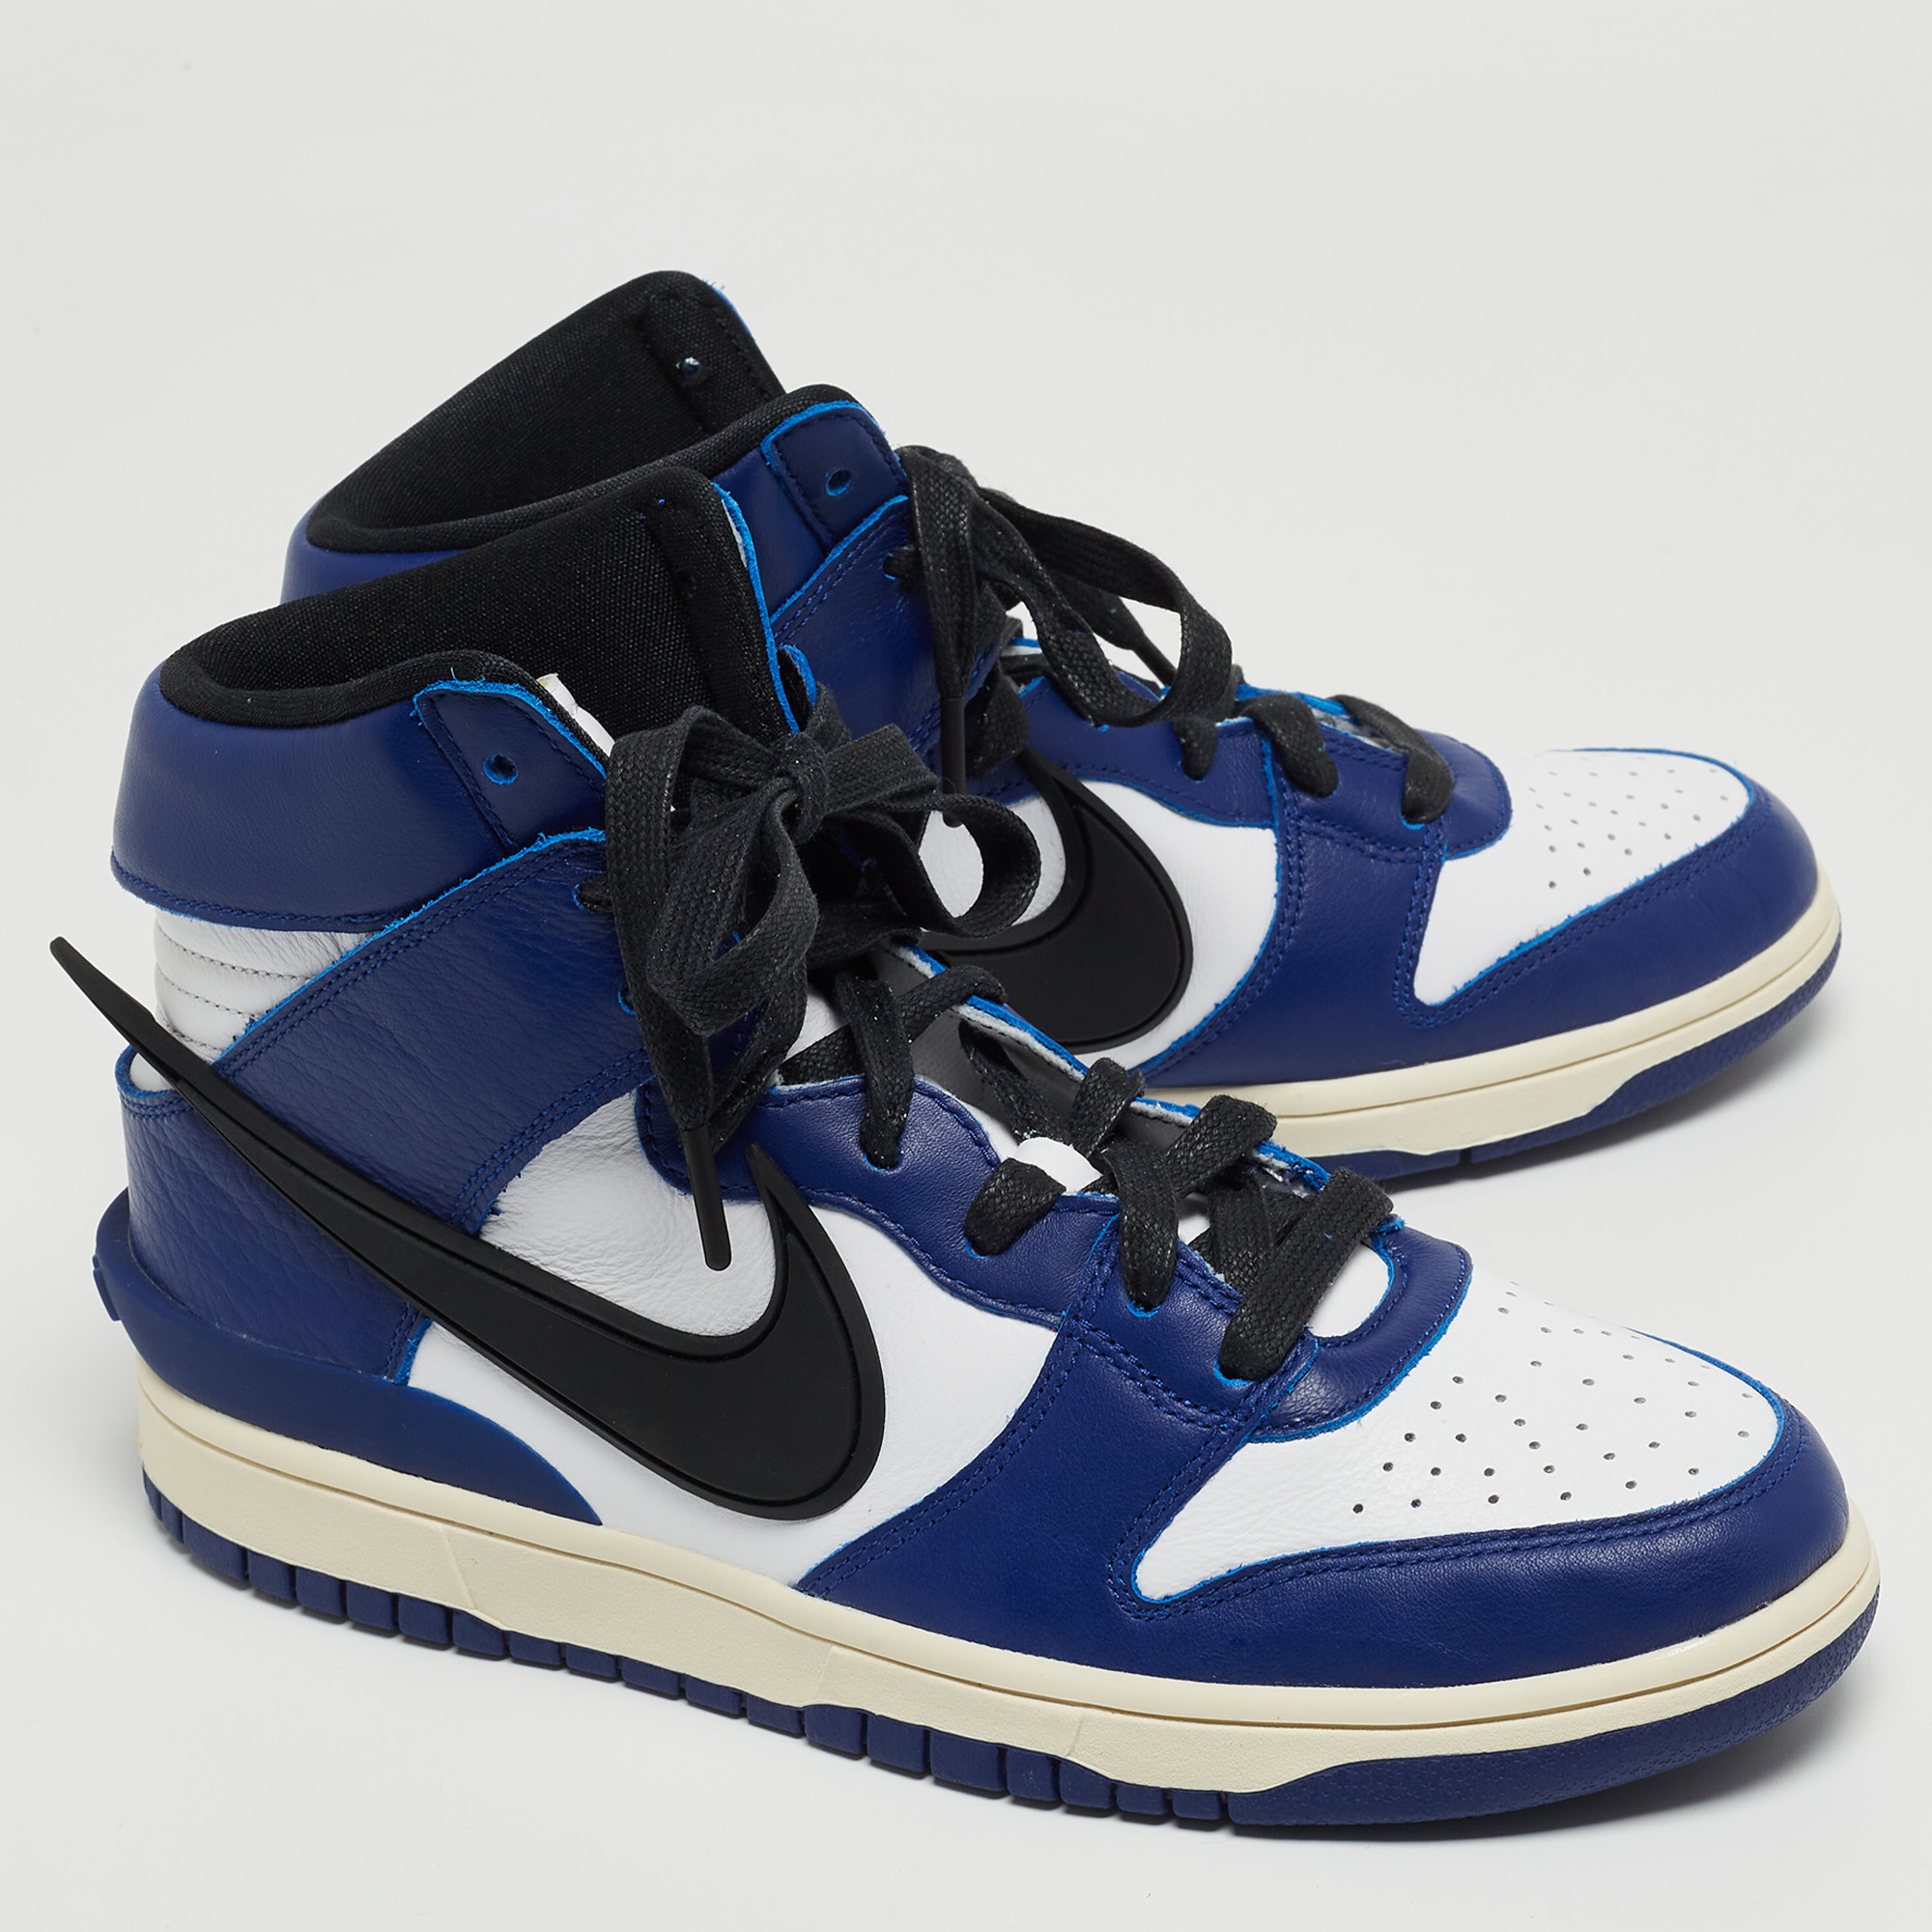 Nike X Ambush Blue/White Leather Dunk High Deep Royal Sneakers Size 42